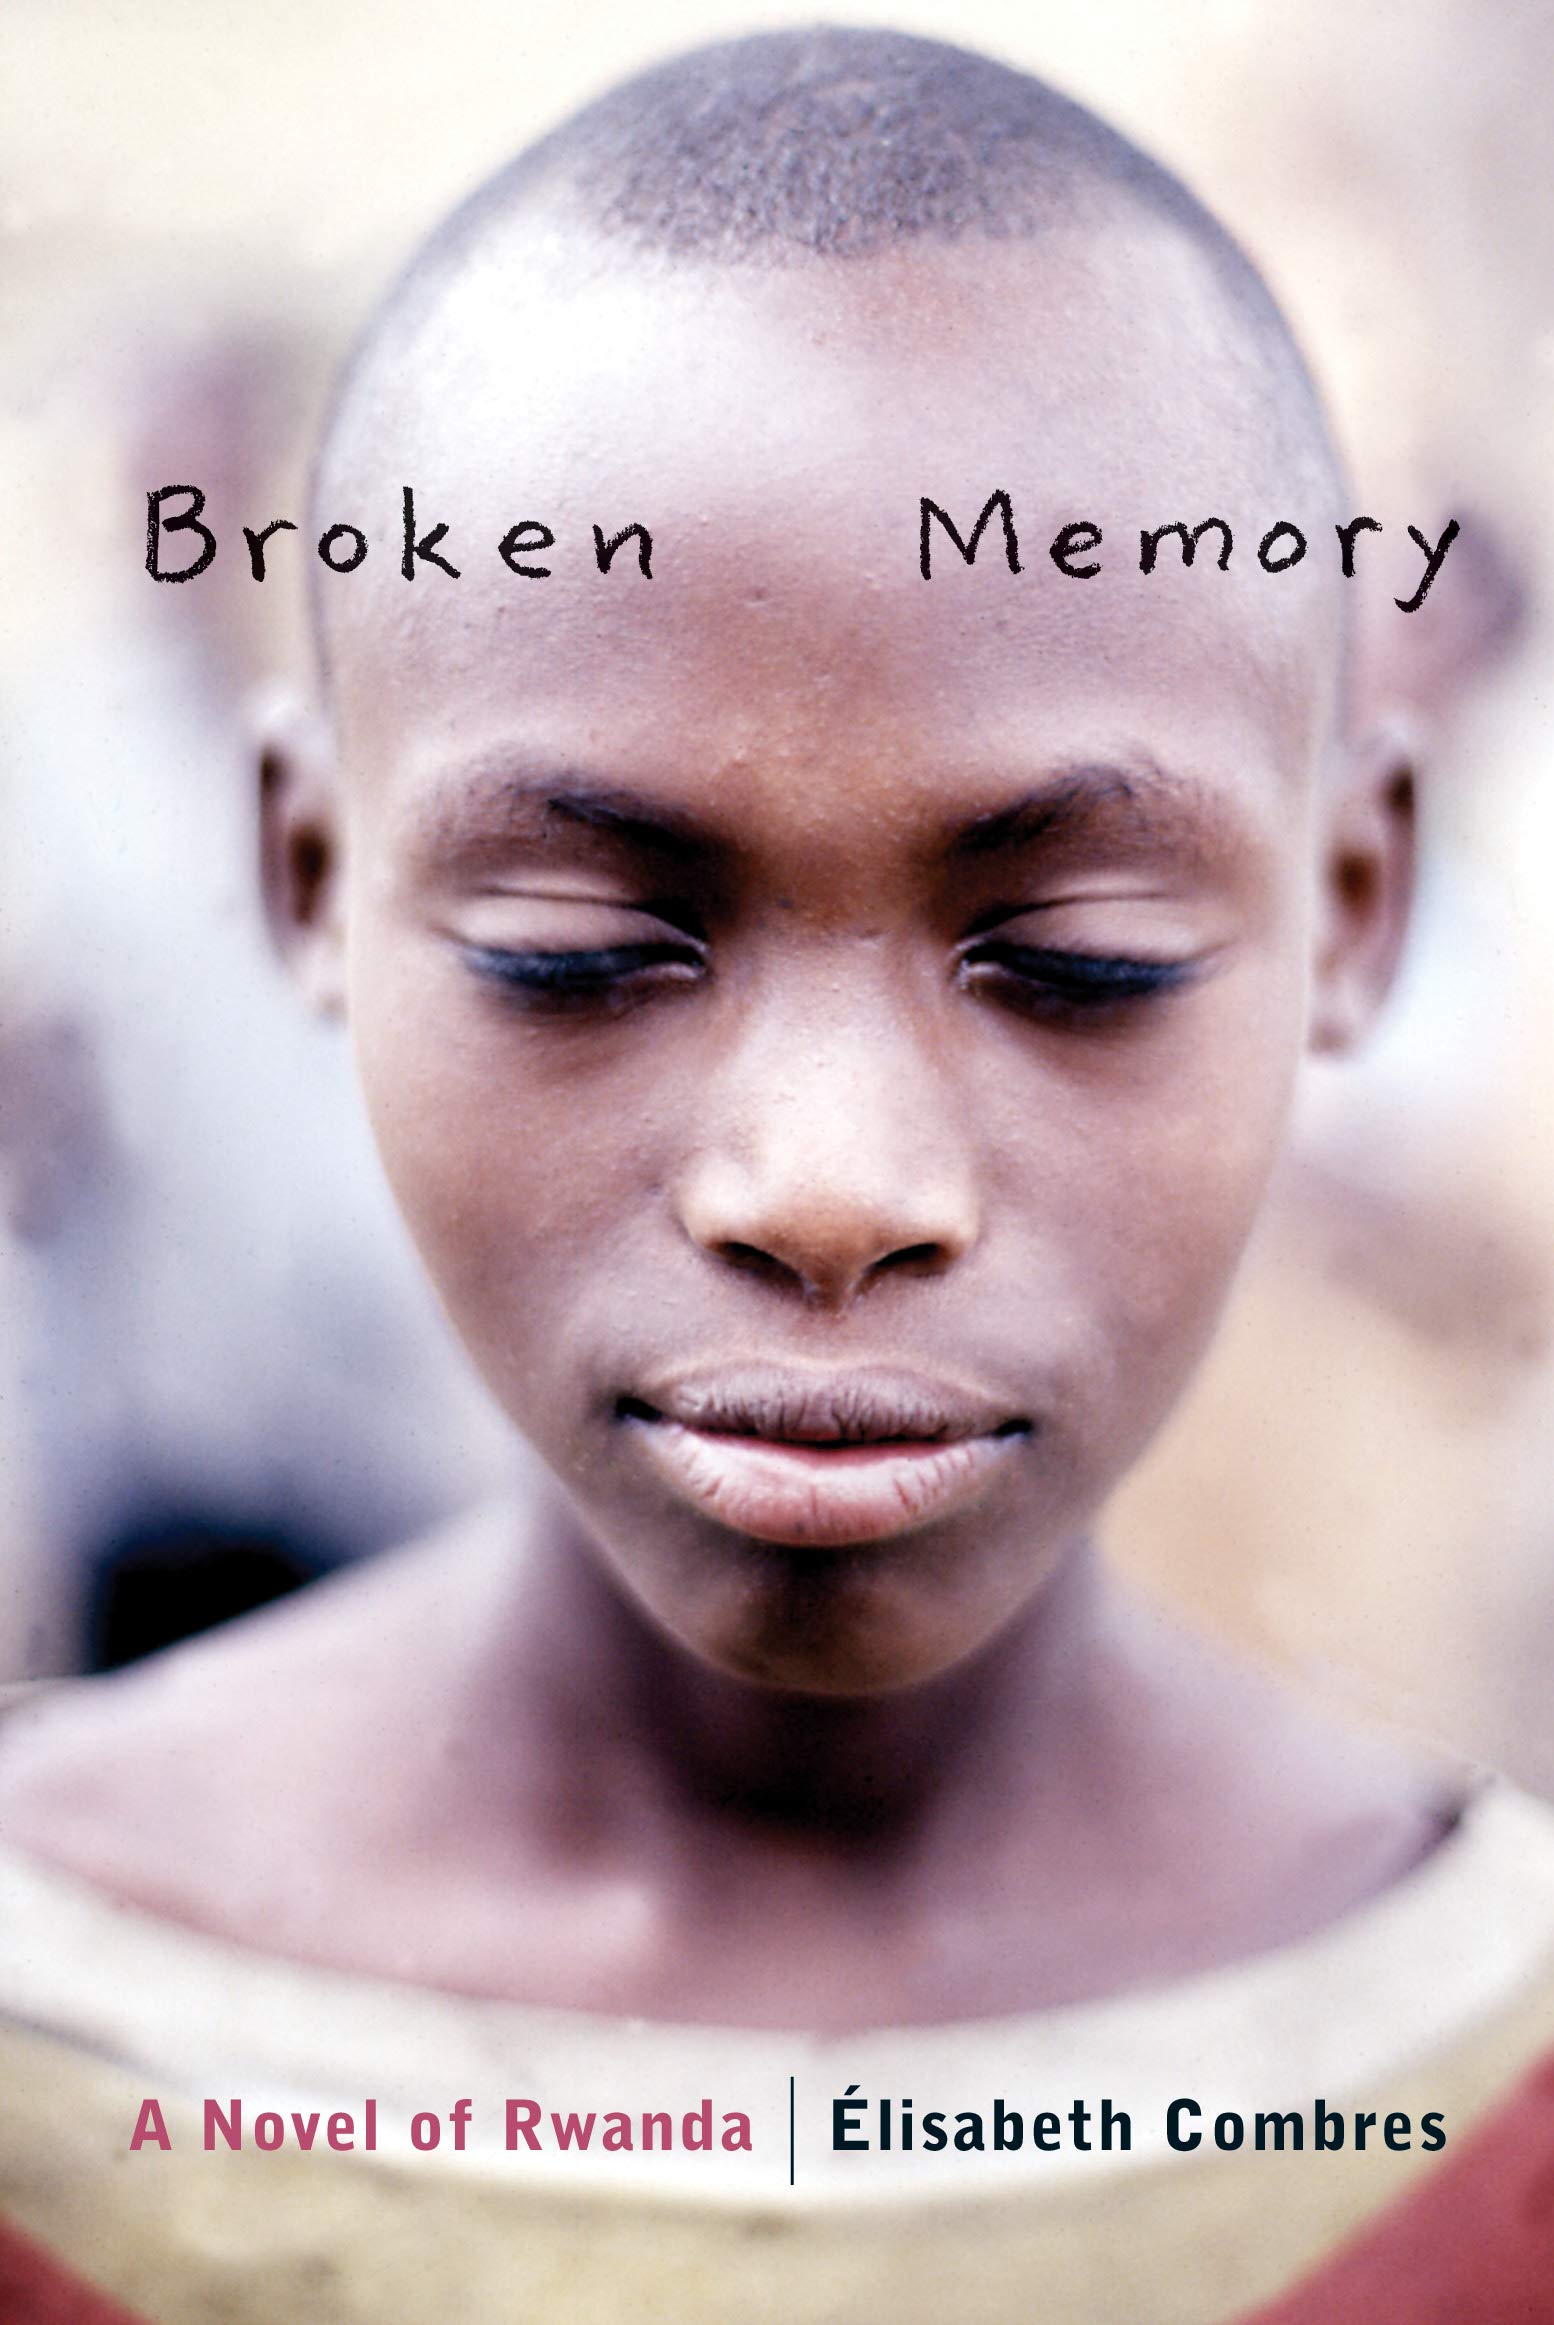 Broken Memory: A Novel of Rwanda